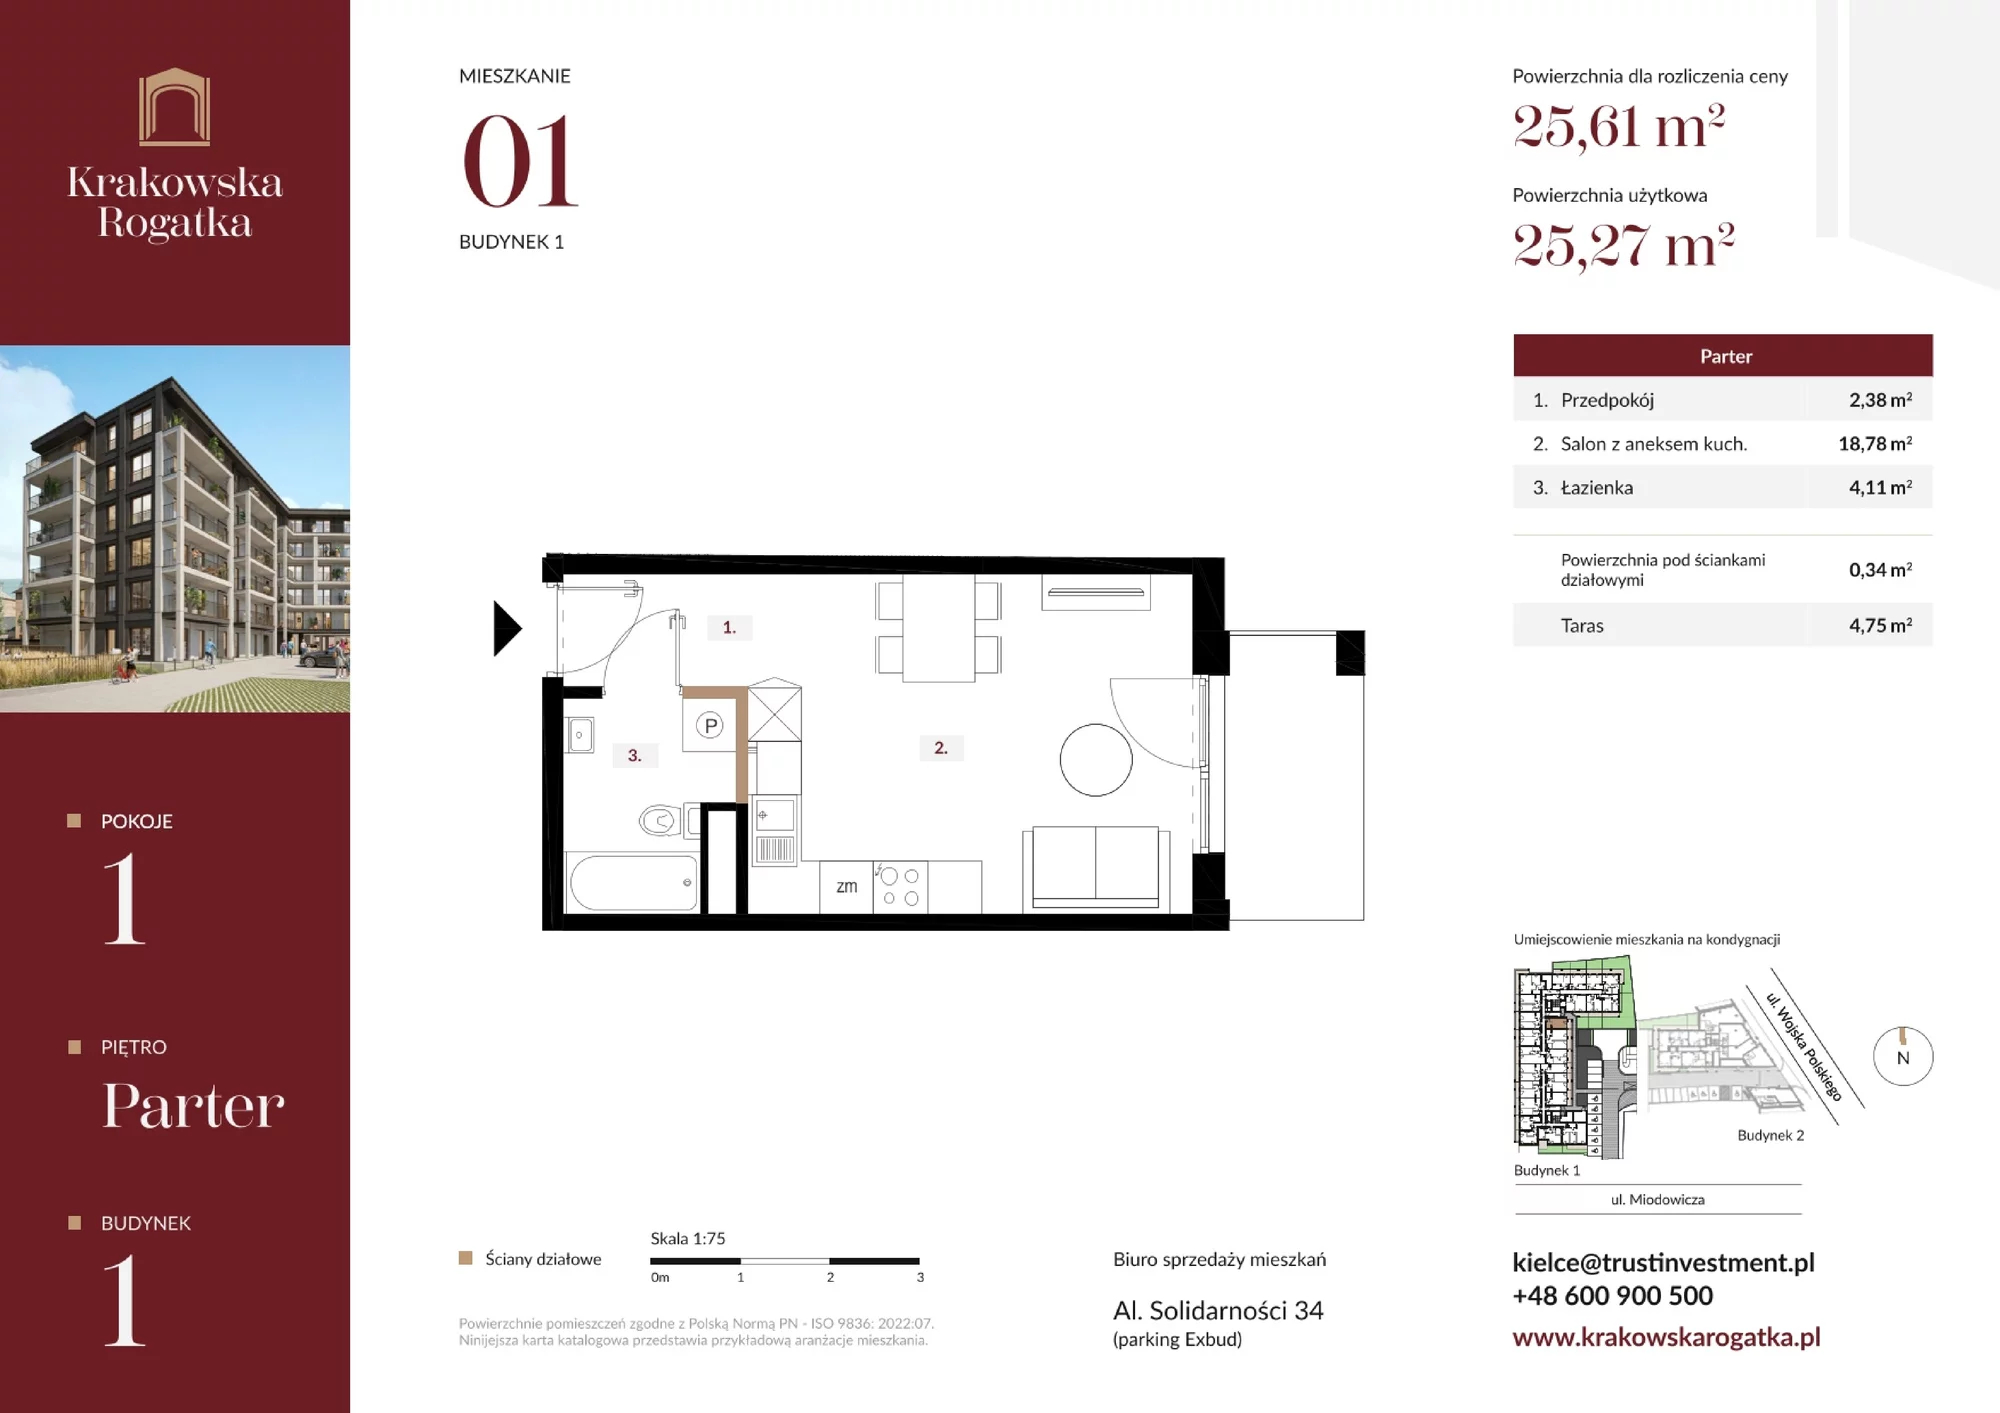 Mieszkanie 25,61 m², parter, oferta nr Budynek 1 Mieszkanie 1, Krakowska Rogatka, Kielce, ul. Miodowicza 1